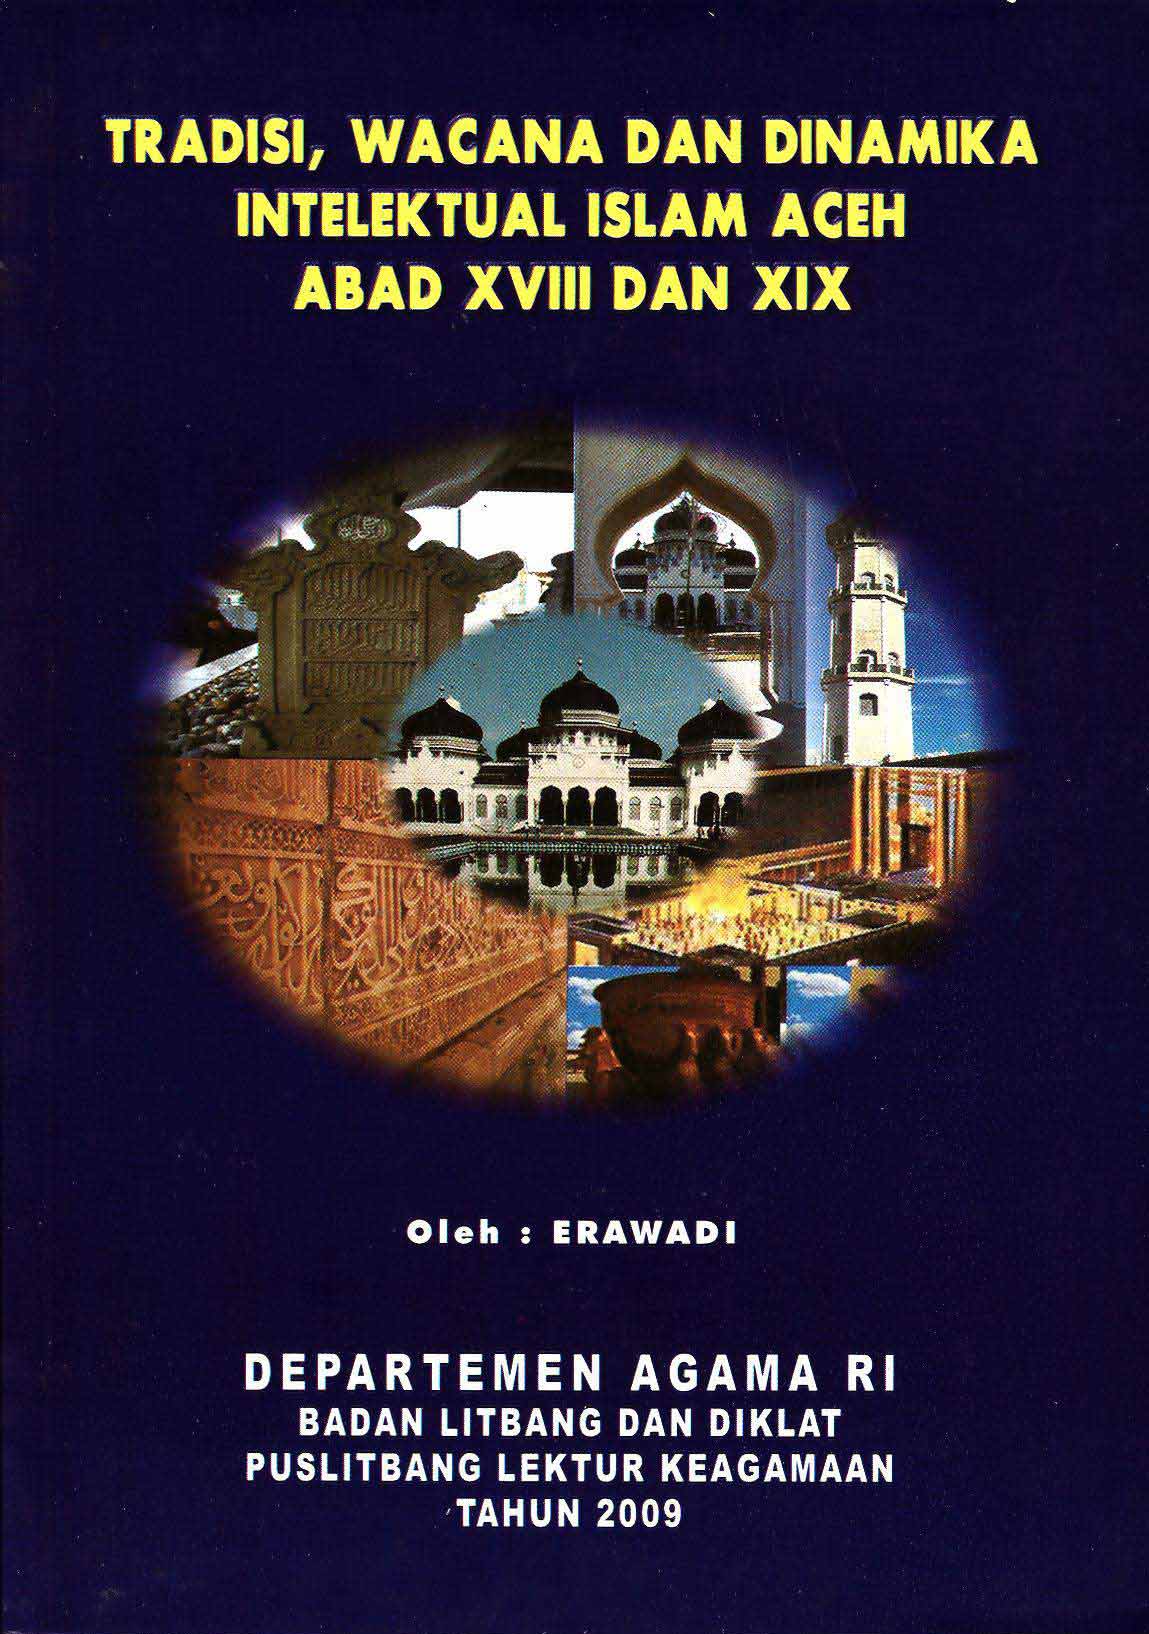 Tradisi, Wacana dan Dinamika Intelektual Islam Aceh Abad XVIII dan XIX